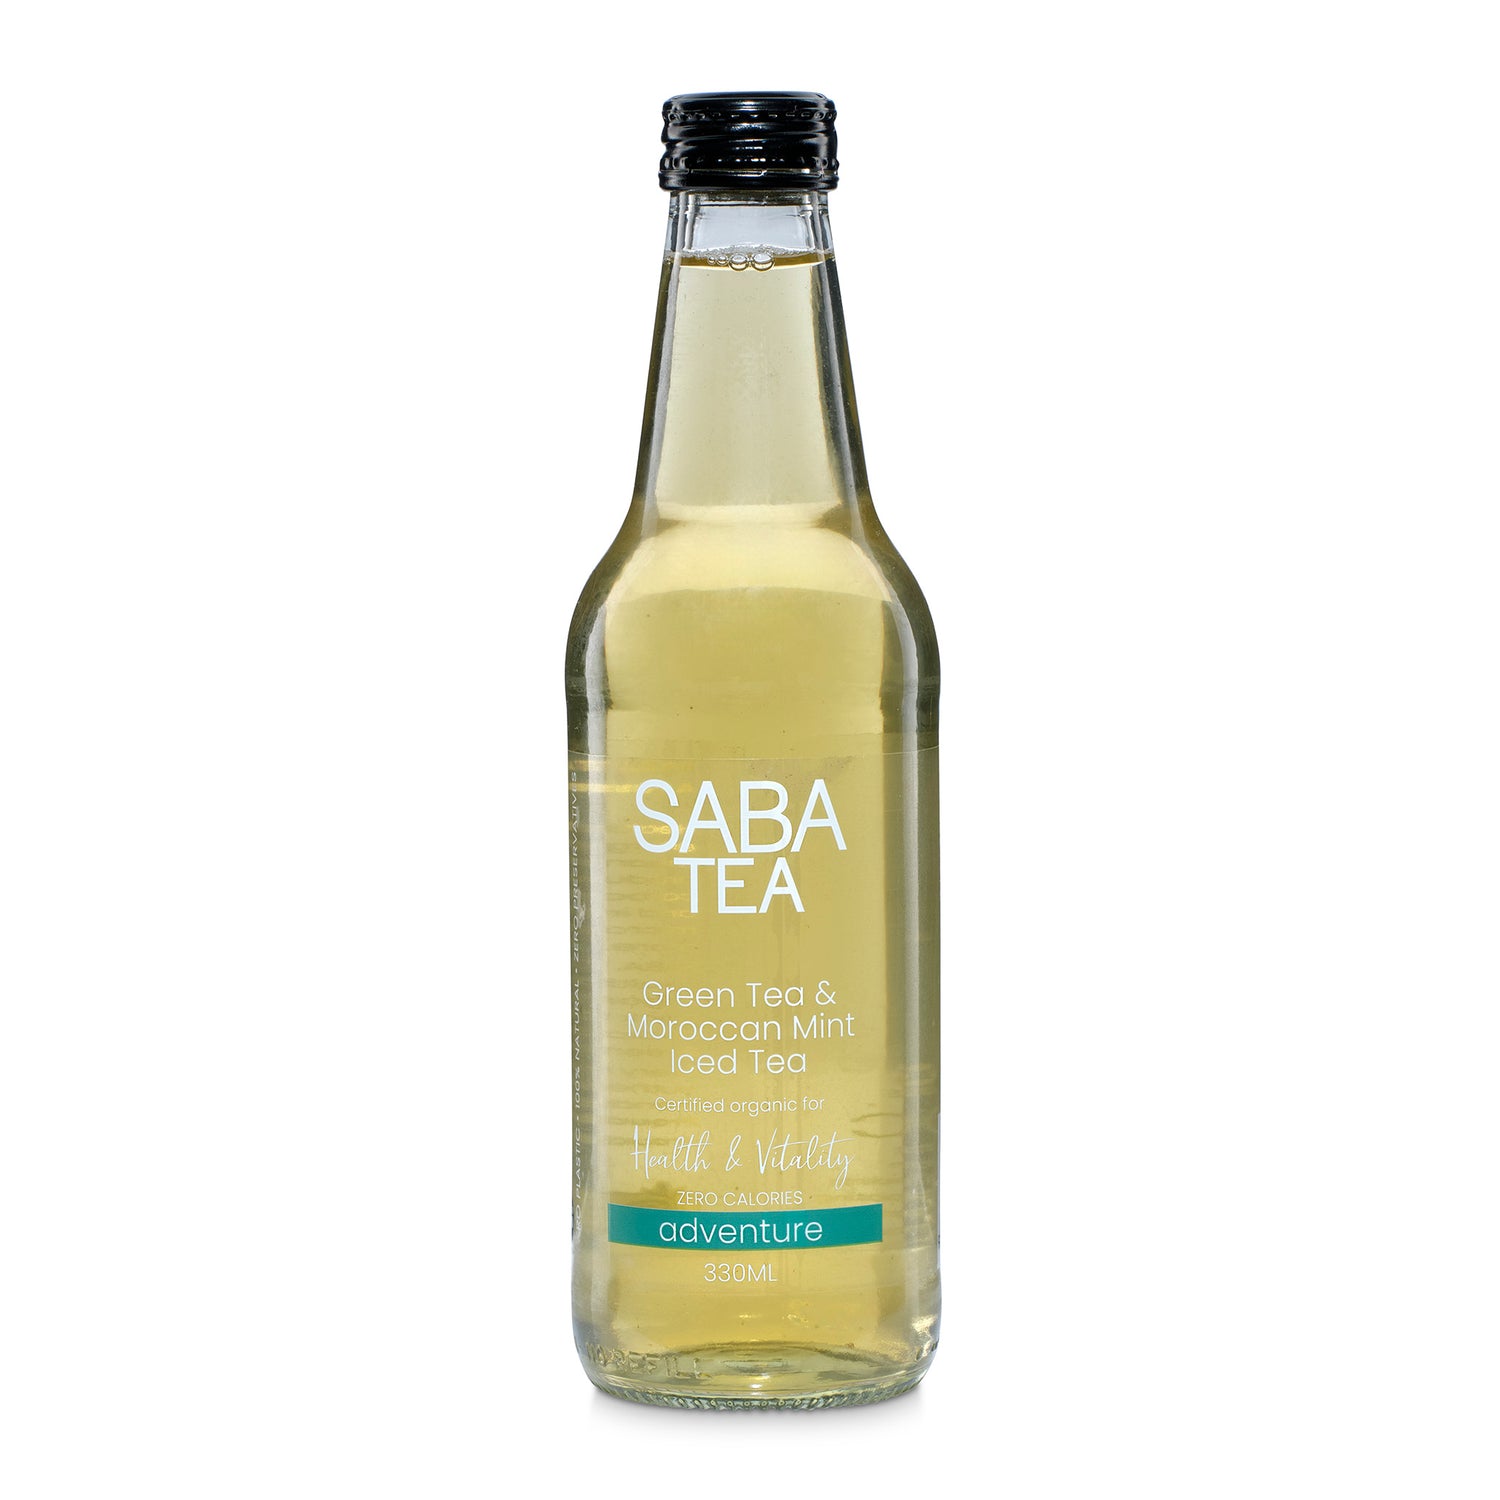 SABA TEA